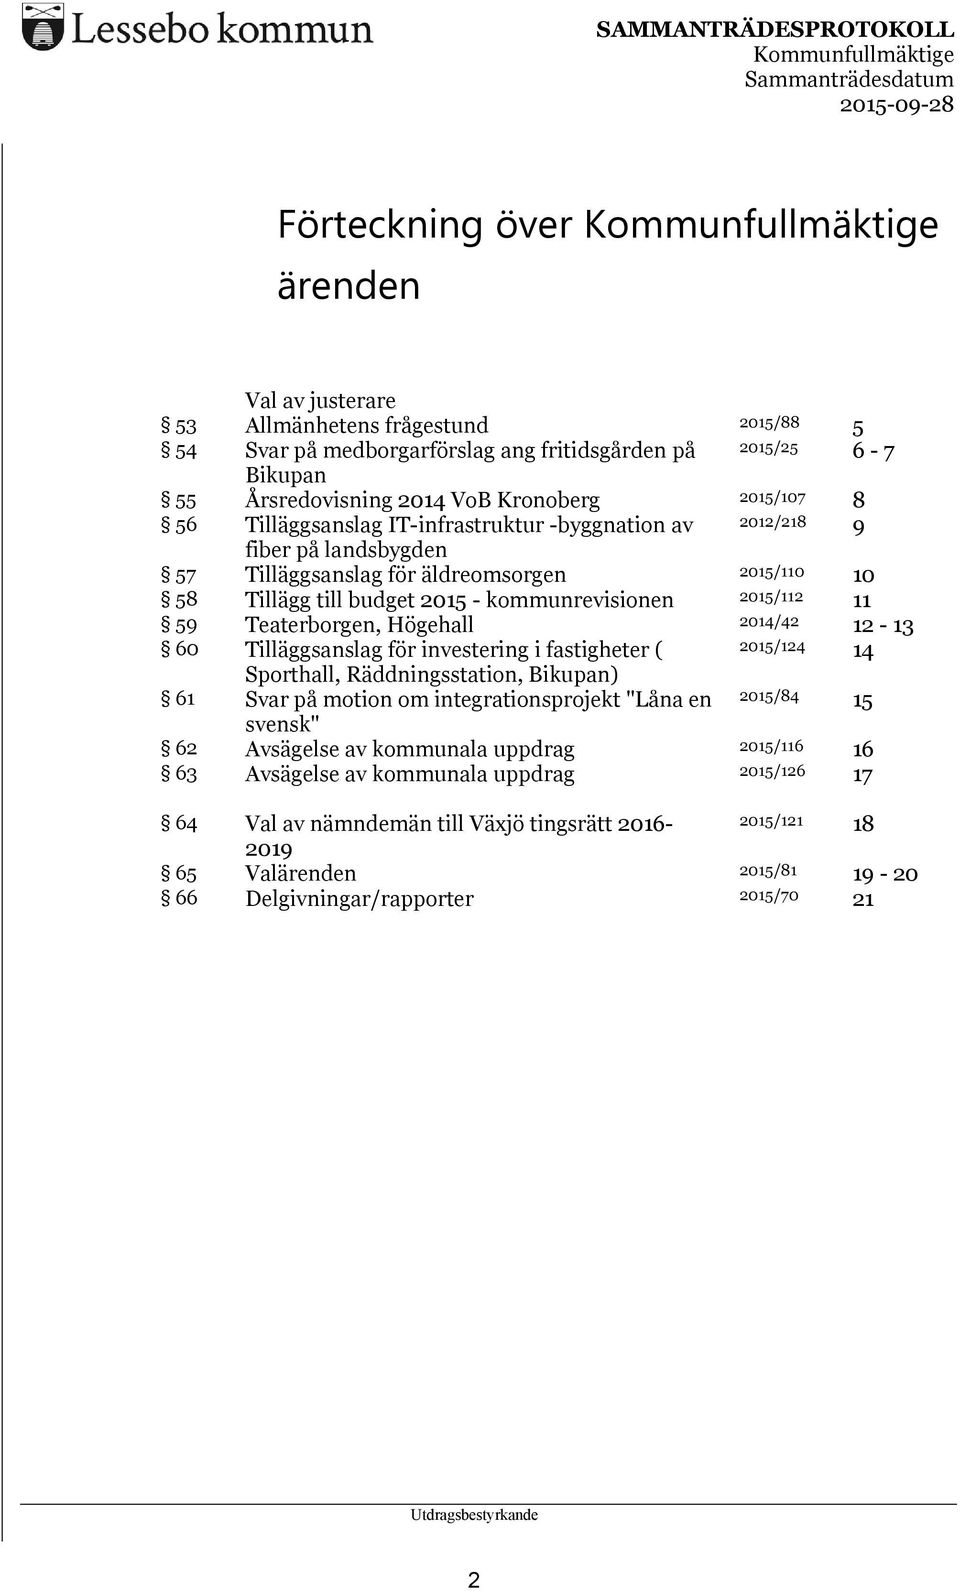 Teaterborgen, Högehall 2014/42 12-13 60 Tilläggsanslag för investering i fastigheter ( 2015/124 14 Sporthall, Räddningsstation, Bikupan) 61 Svar på motion om integrationsprojekt "Låna en 2015/84 15